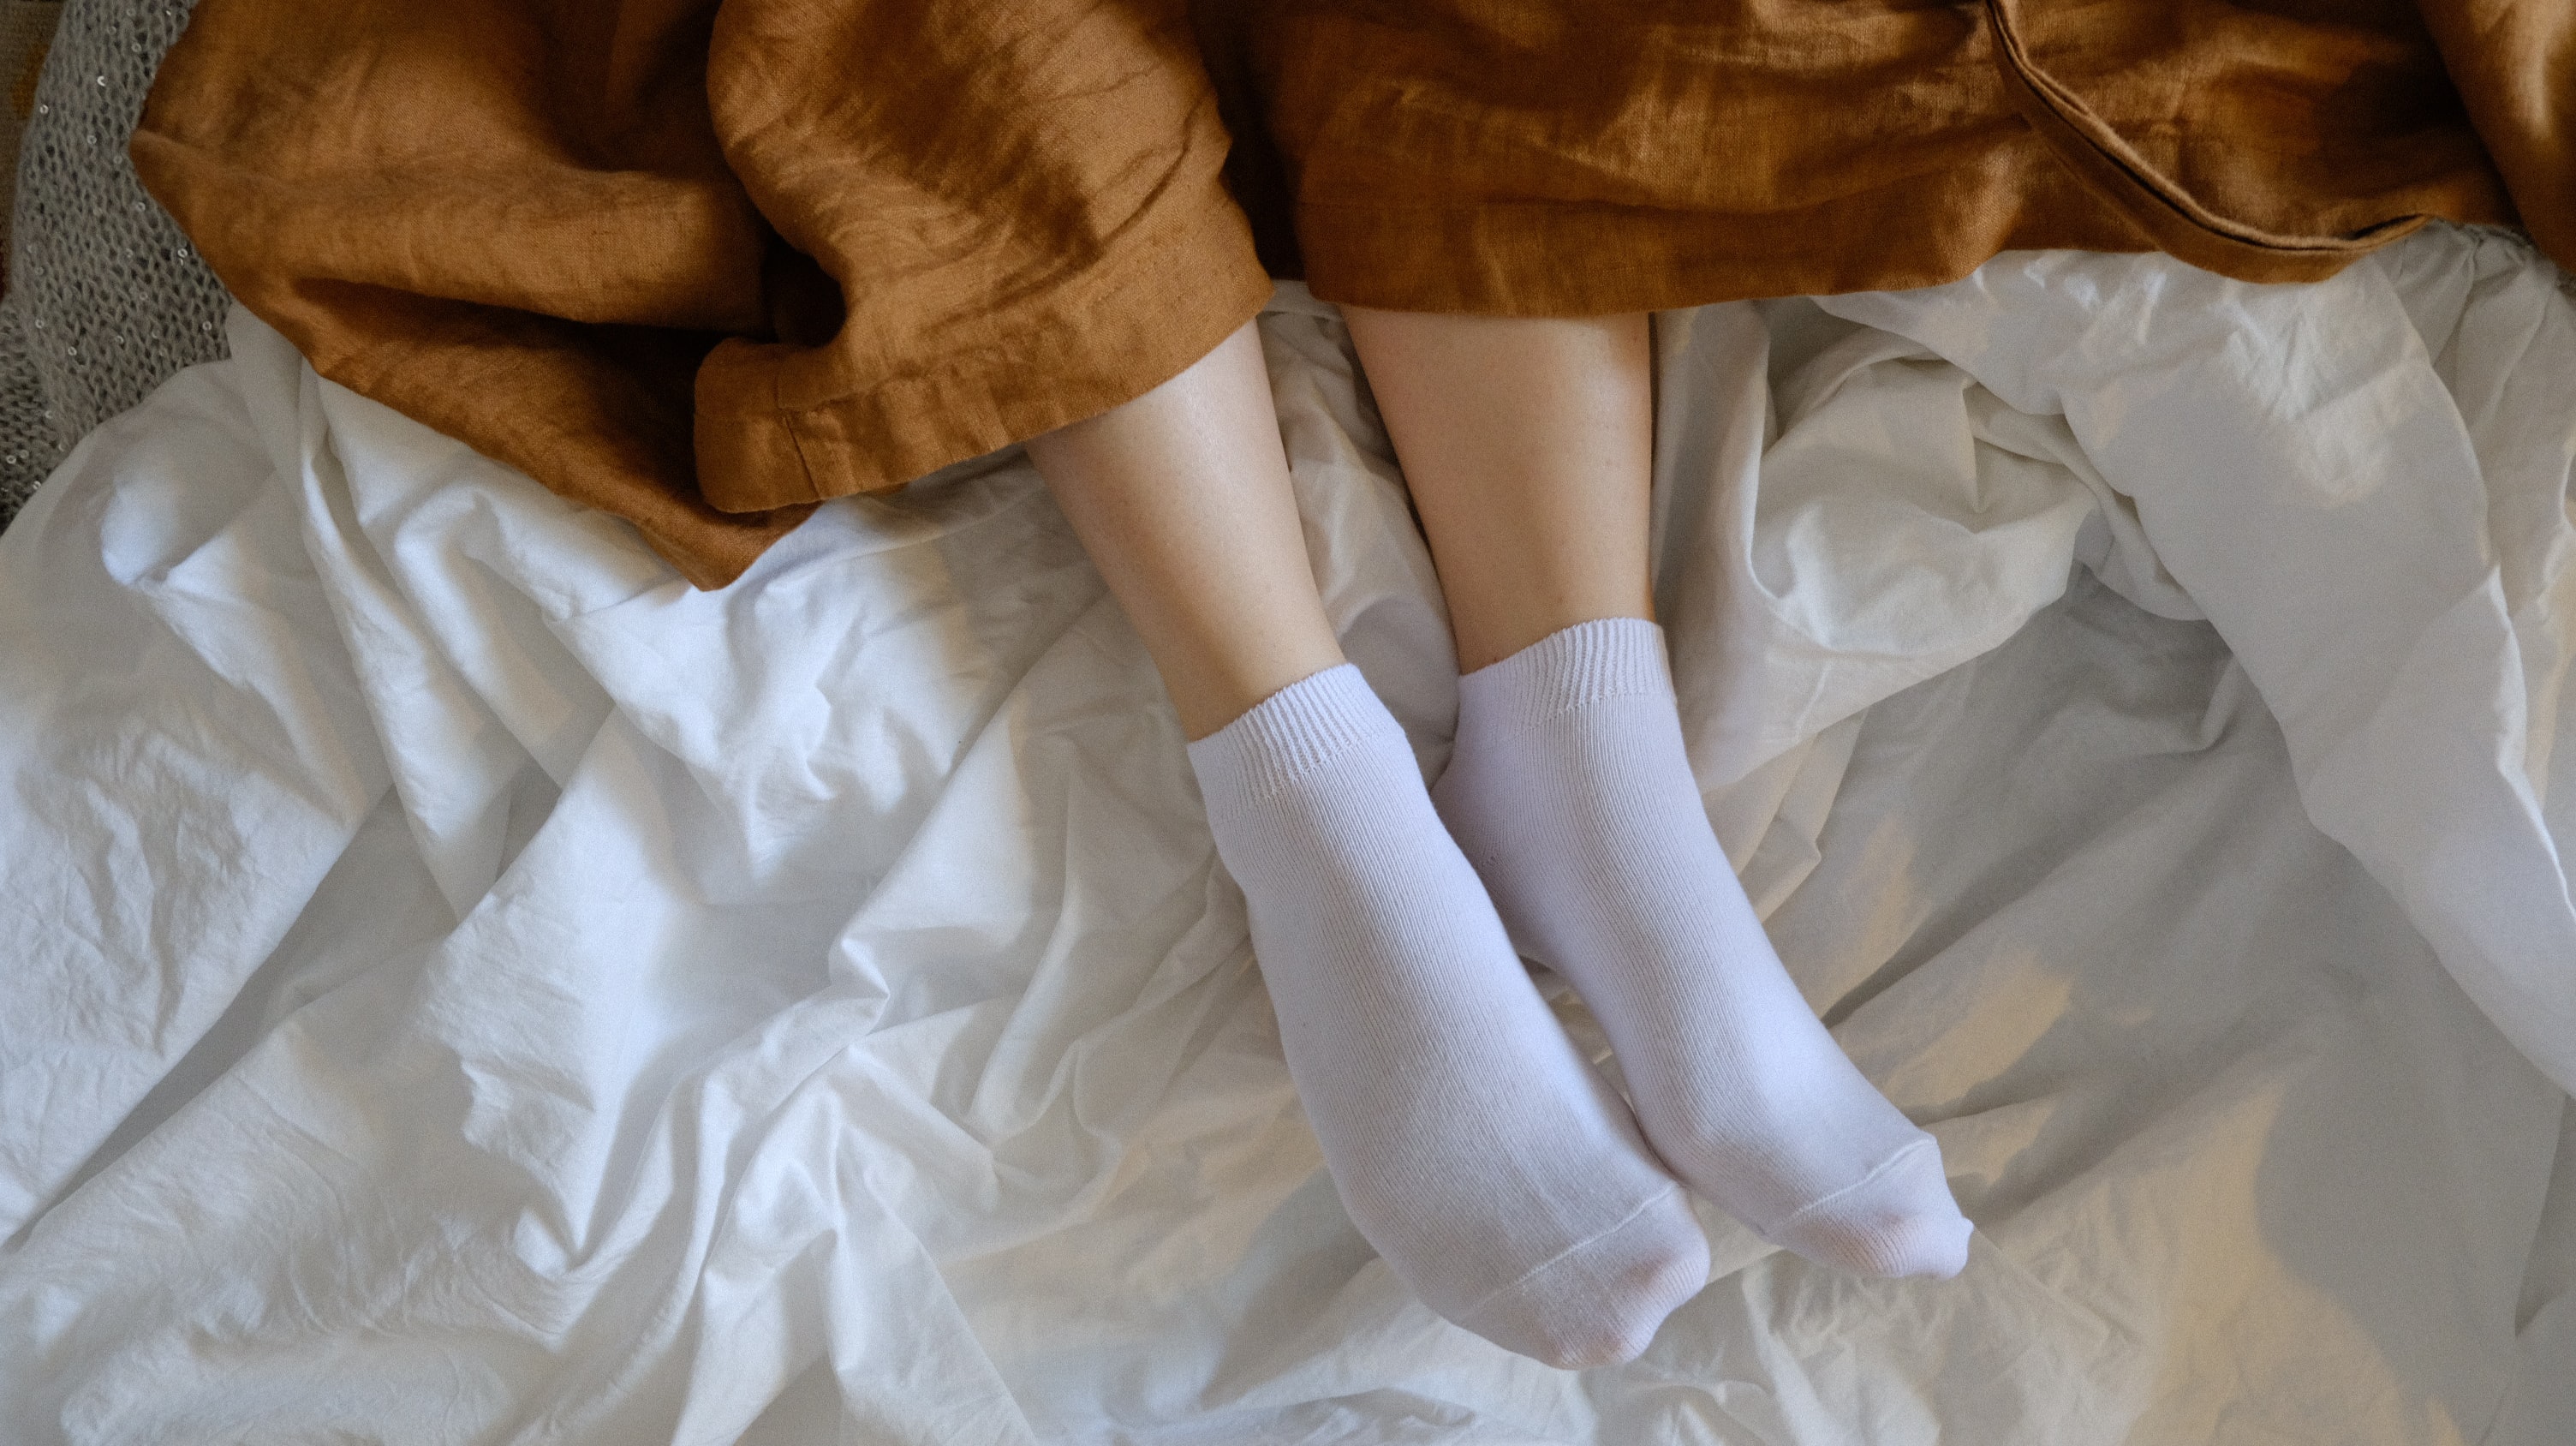 Socks White Socks Short Socks Legs Feet In Bed Linen Robe High Angle